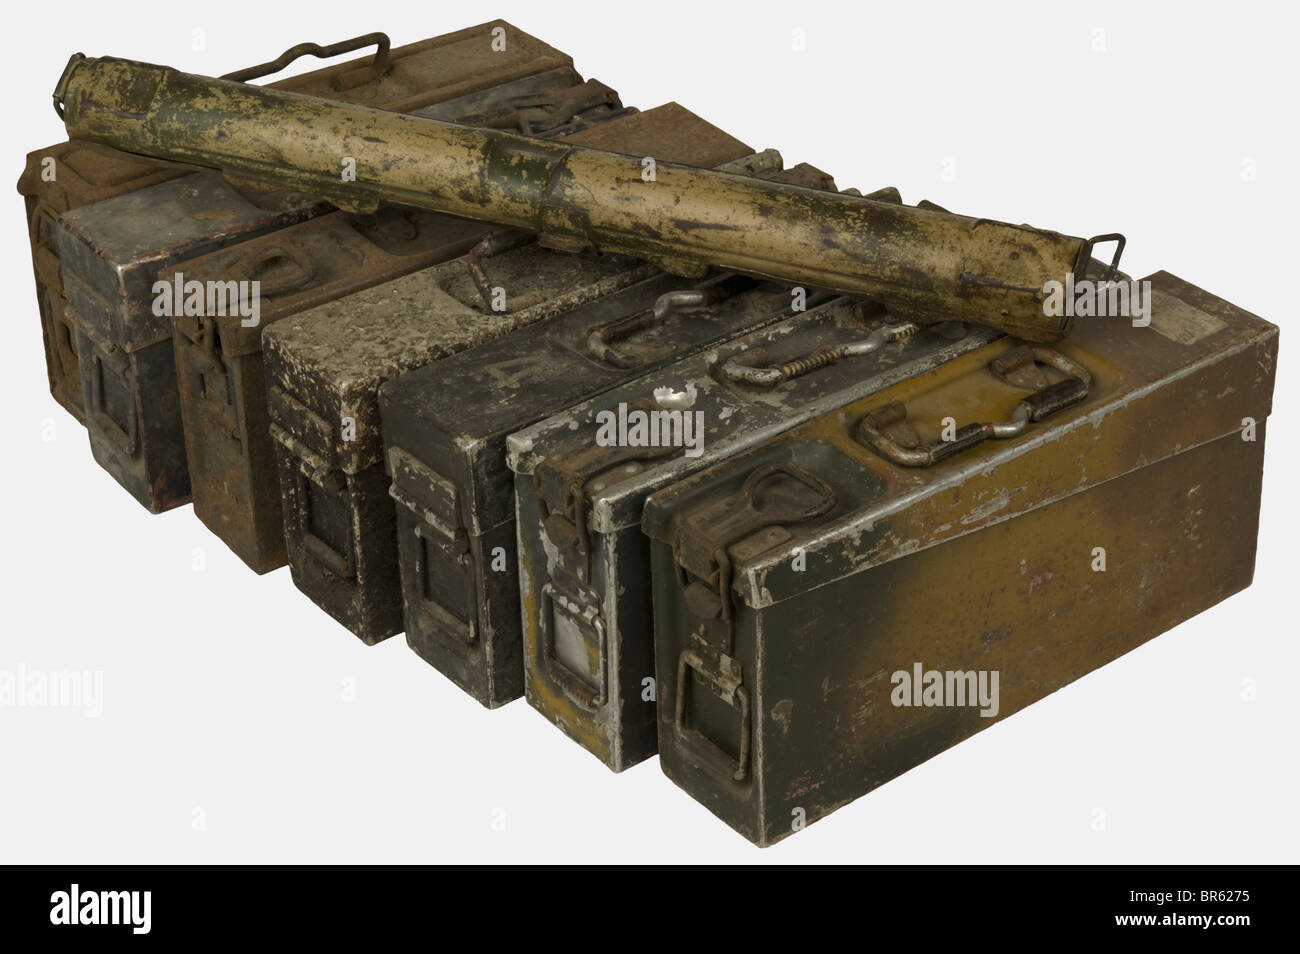 Eine Gruppe von Geräten der Bundeswehr, bestehend aus einem MG34-Einzelfasskoffer mit schöner Baumfarben-Tarnung (Leinwandband fehlt), einem doppelten MG34-Fassgehäuse mit zwei Tonnen-Tarnkappenresten mit zwei 75-Schuss-MG 34/42-Magazinen (eines mit schöner Zwei-Ton-Tarnung), Sieben Patronengurtkoffer für MG 34/42 aus Aluminium oder Stahl mit Ledergriffen, einer der getarnten Aluminiumkleidergehäuse weist einen Splitterschaden auf der Abdeckung auf. Historisch, historisch, 1930er, 1930er, 1930er, 20. Jahrhundert, Zubehör, Zubehör, Zubehör, Zubehör, Verwertungs-, Versorgungs-, Objekt-, Objekte, Stills, Clippi, Stockfoto